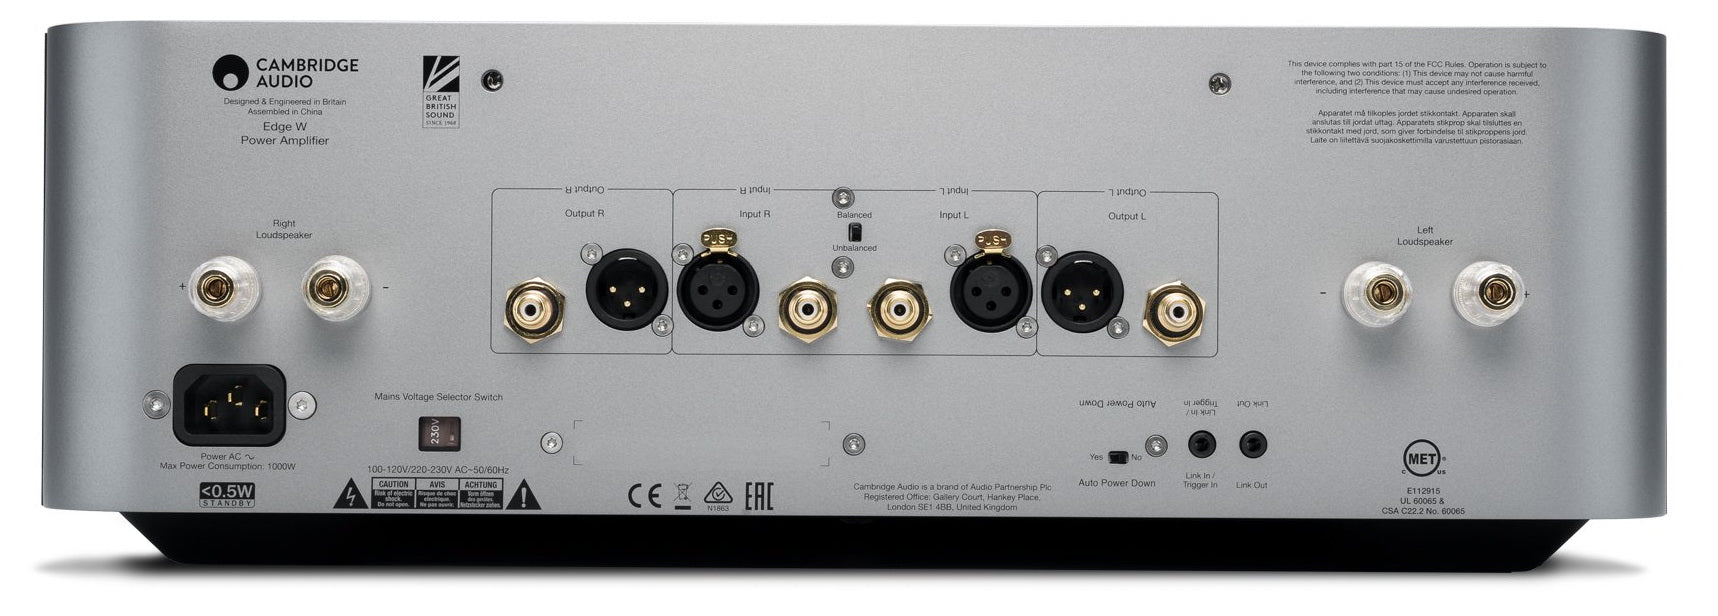 Cambridge Audio EDGE  W - Amplificateur de puissance 100W RMS en 8 Ohms : le meilleur amplificateur de puissance que nous ayons jamais fait!